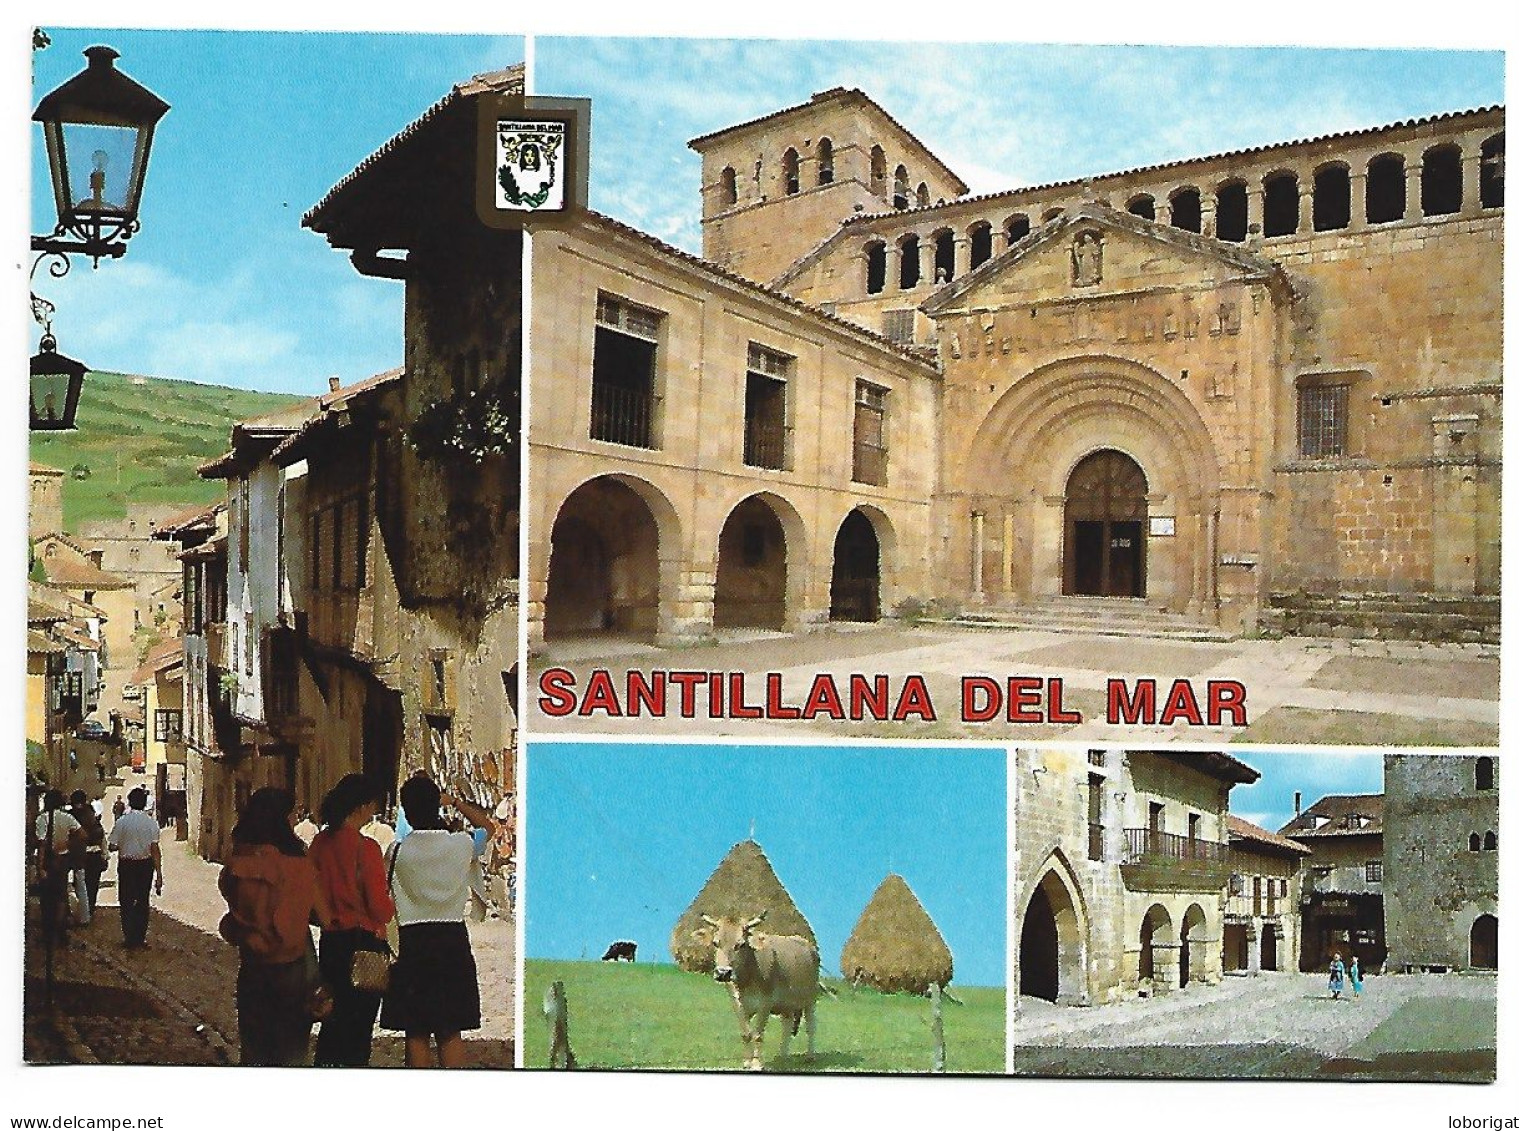 DIVERSOS ASPECTOS / DIFFERENT ASPECTS.-  SANTILLANA DEL MAR.- ( ESPAÑA) - Cantabria (Santander)